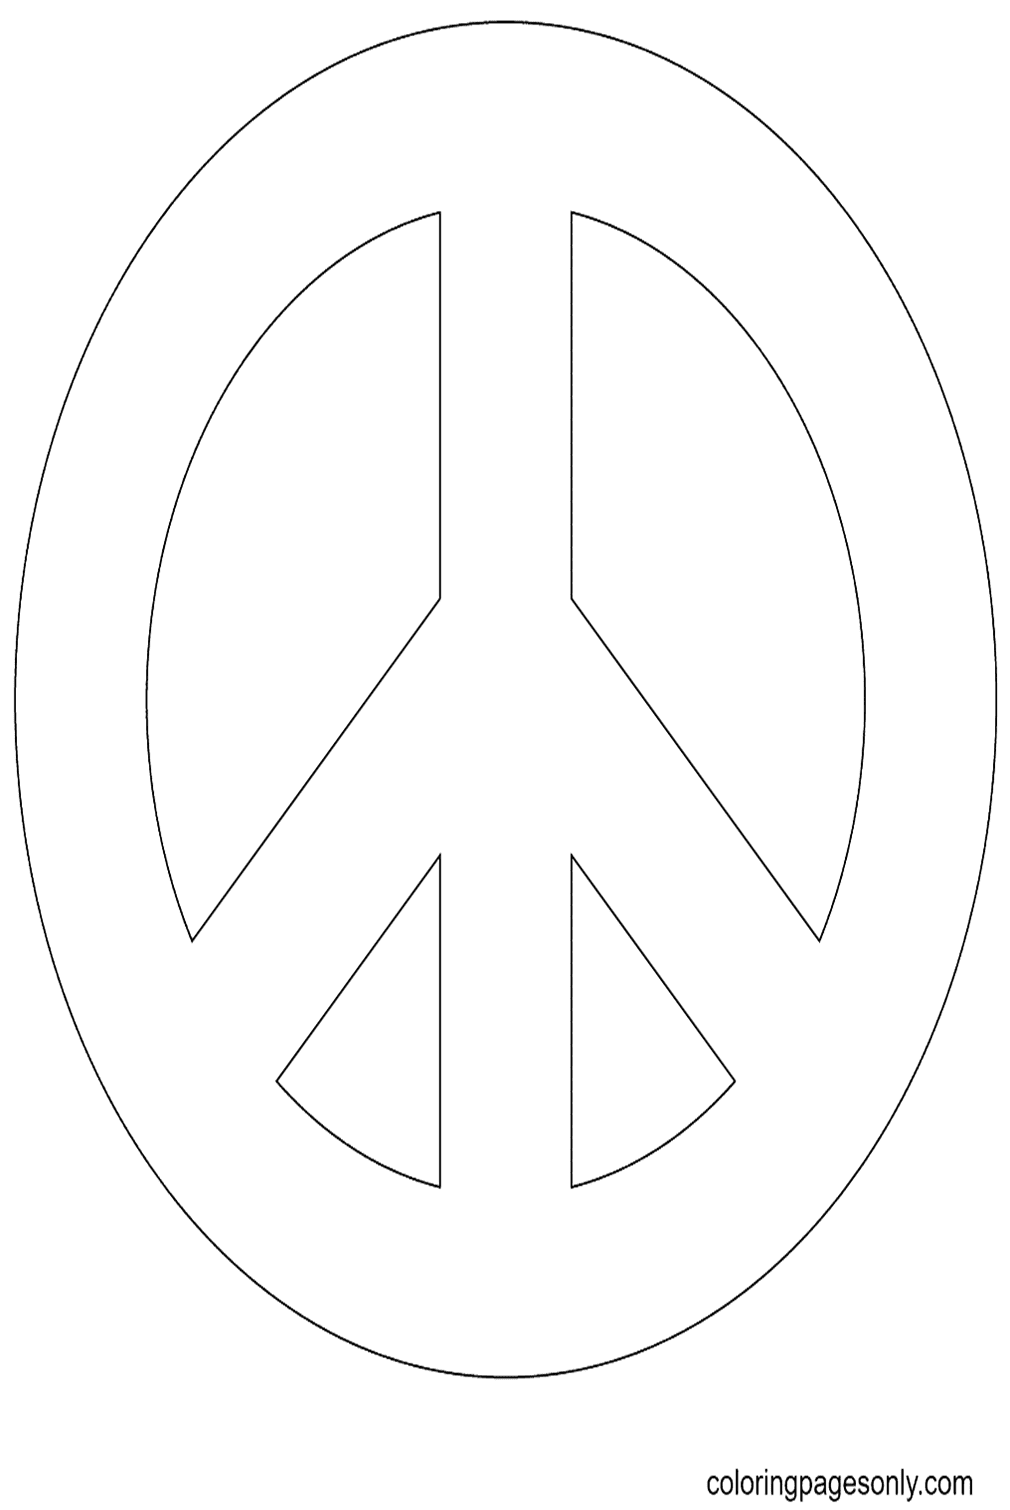 Vredesteken van de Internationale Dag van de Vrede